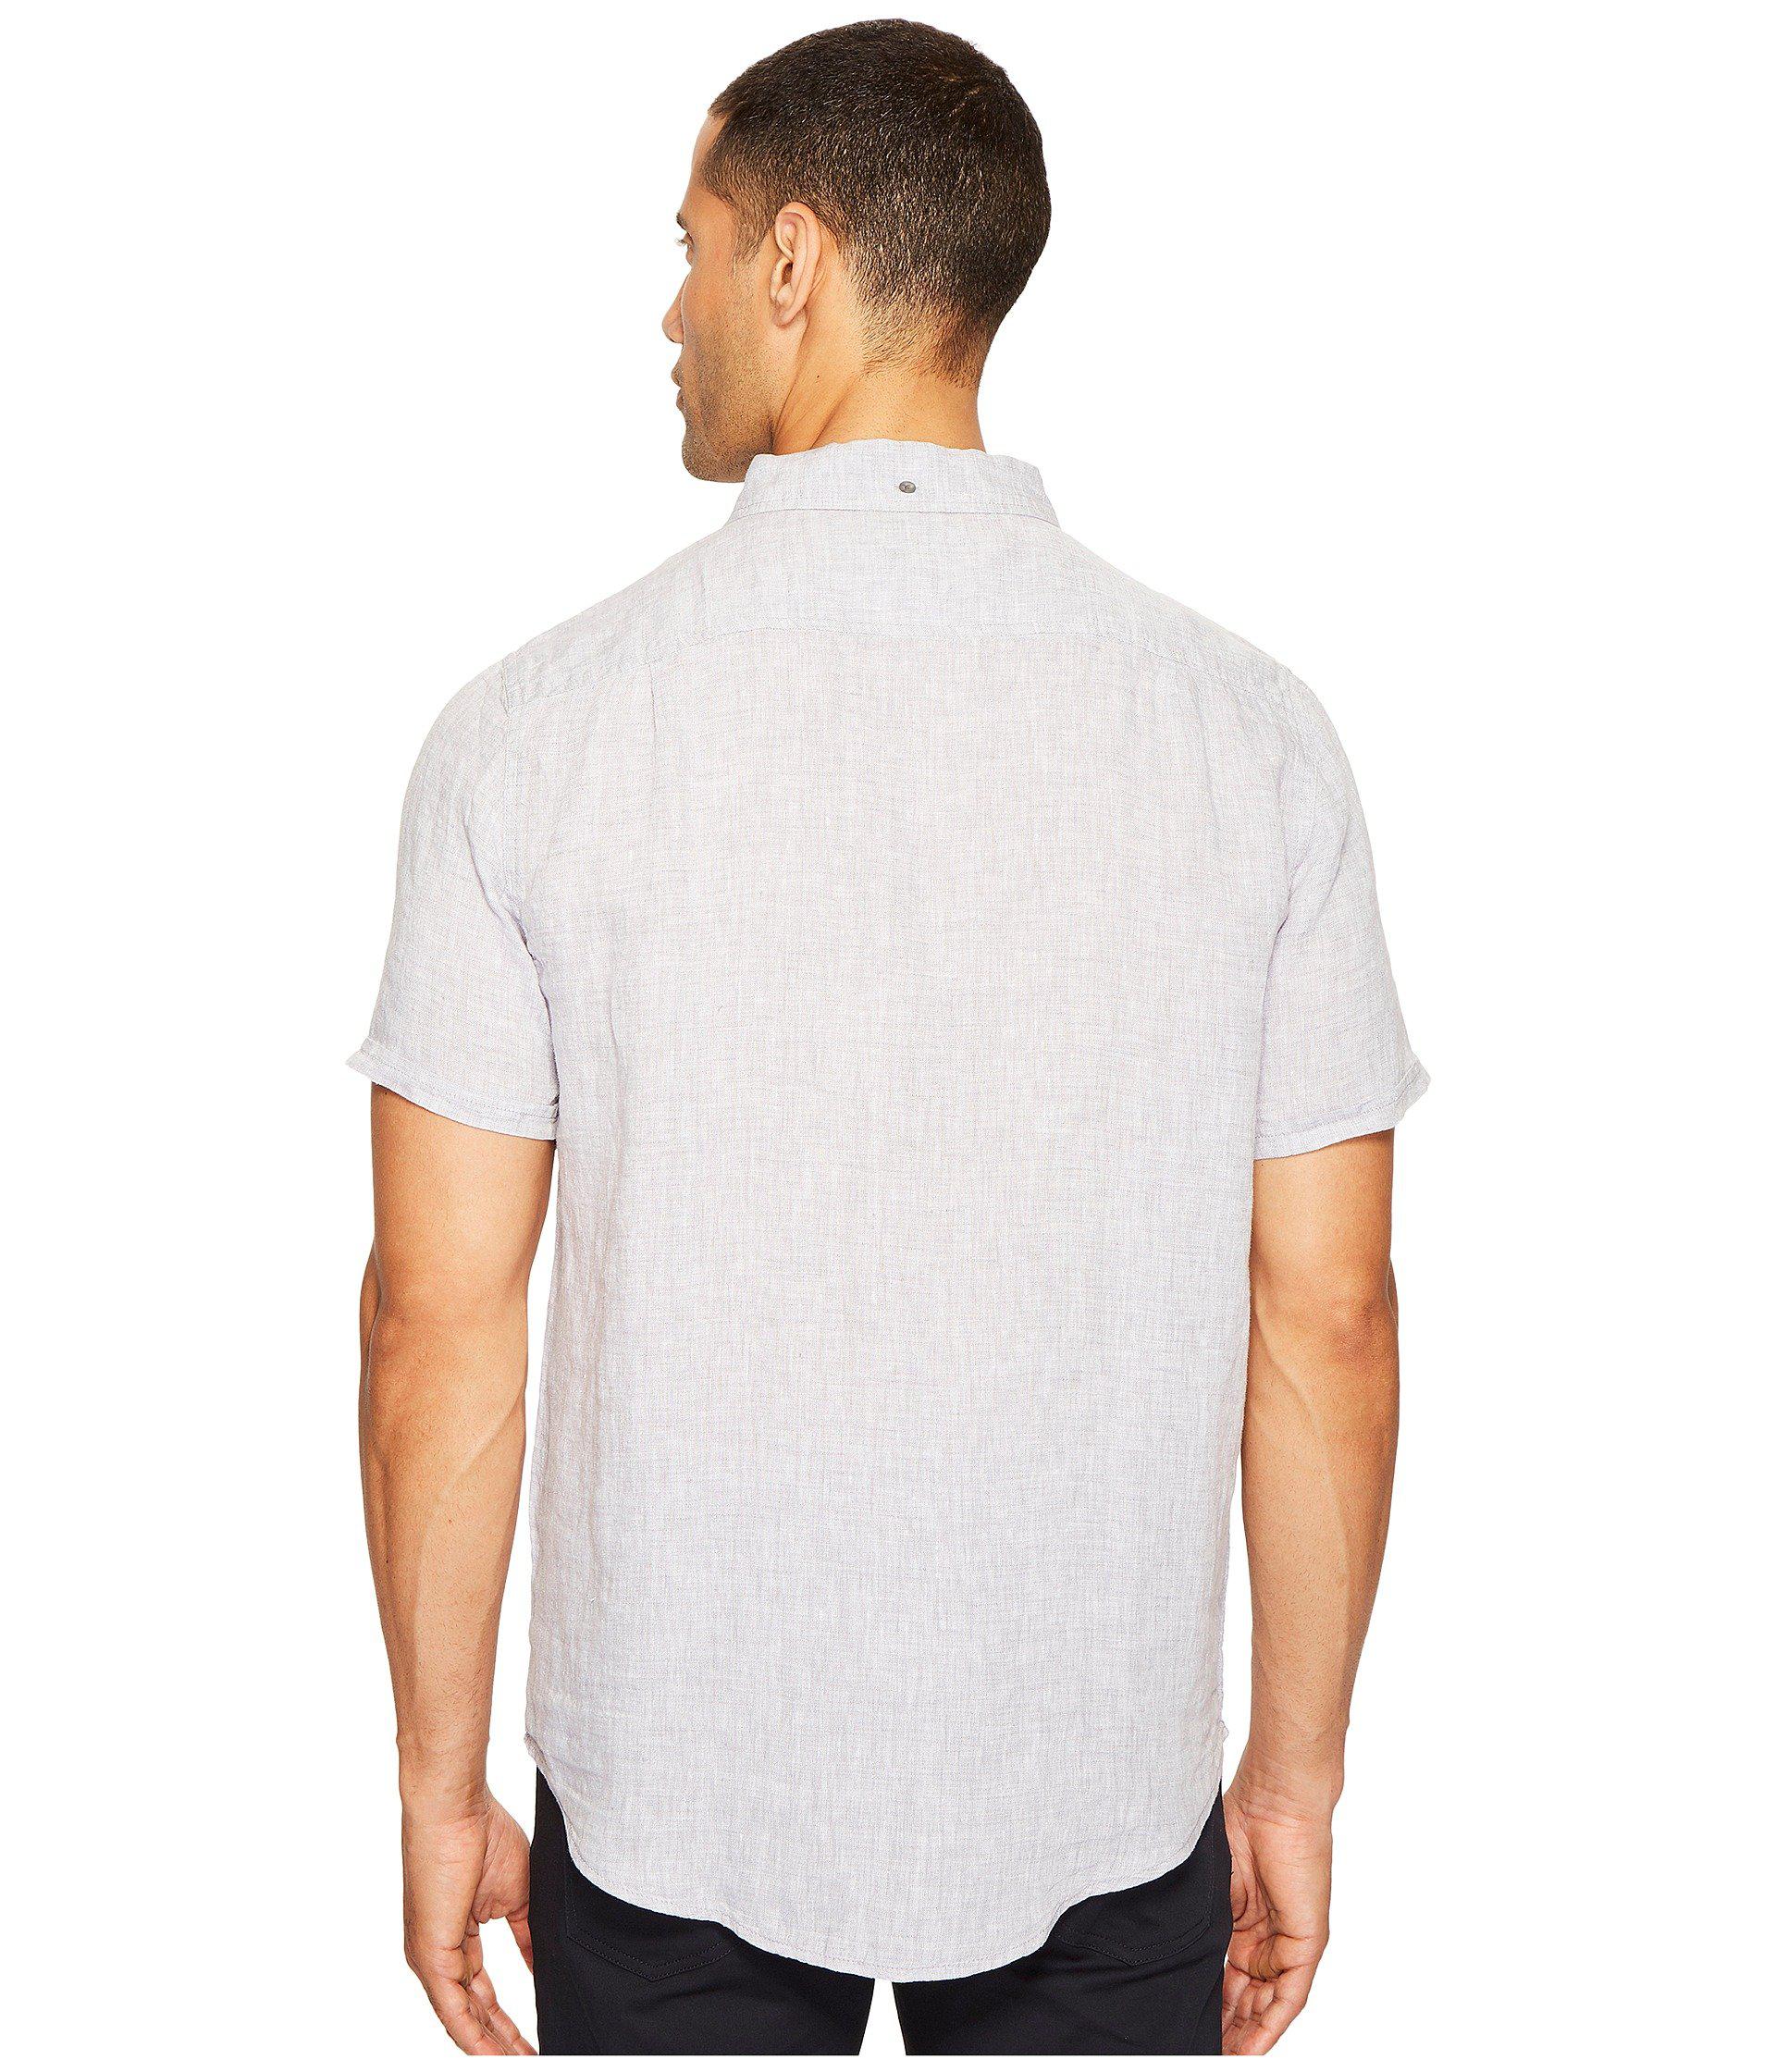 Onia Linen Jack Short Sleeve Shirt in White for Men - Lyst